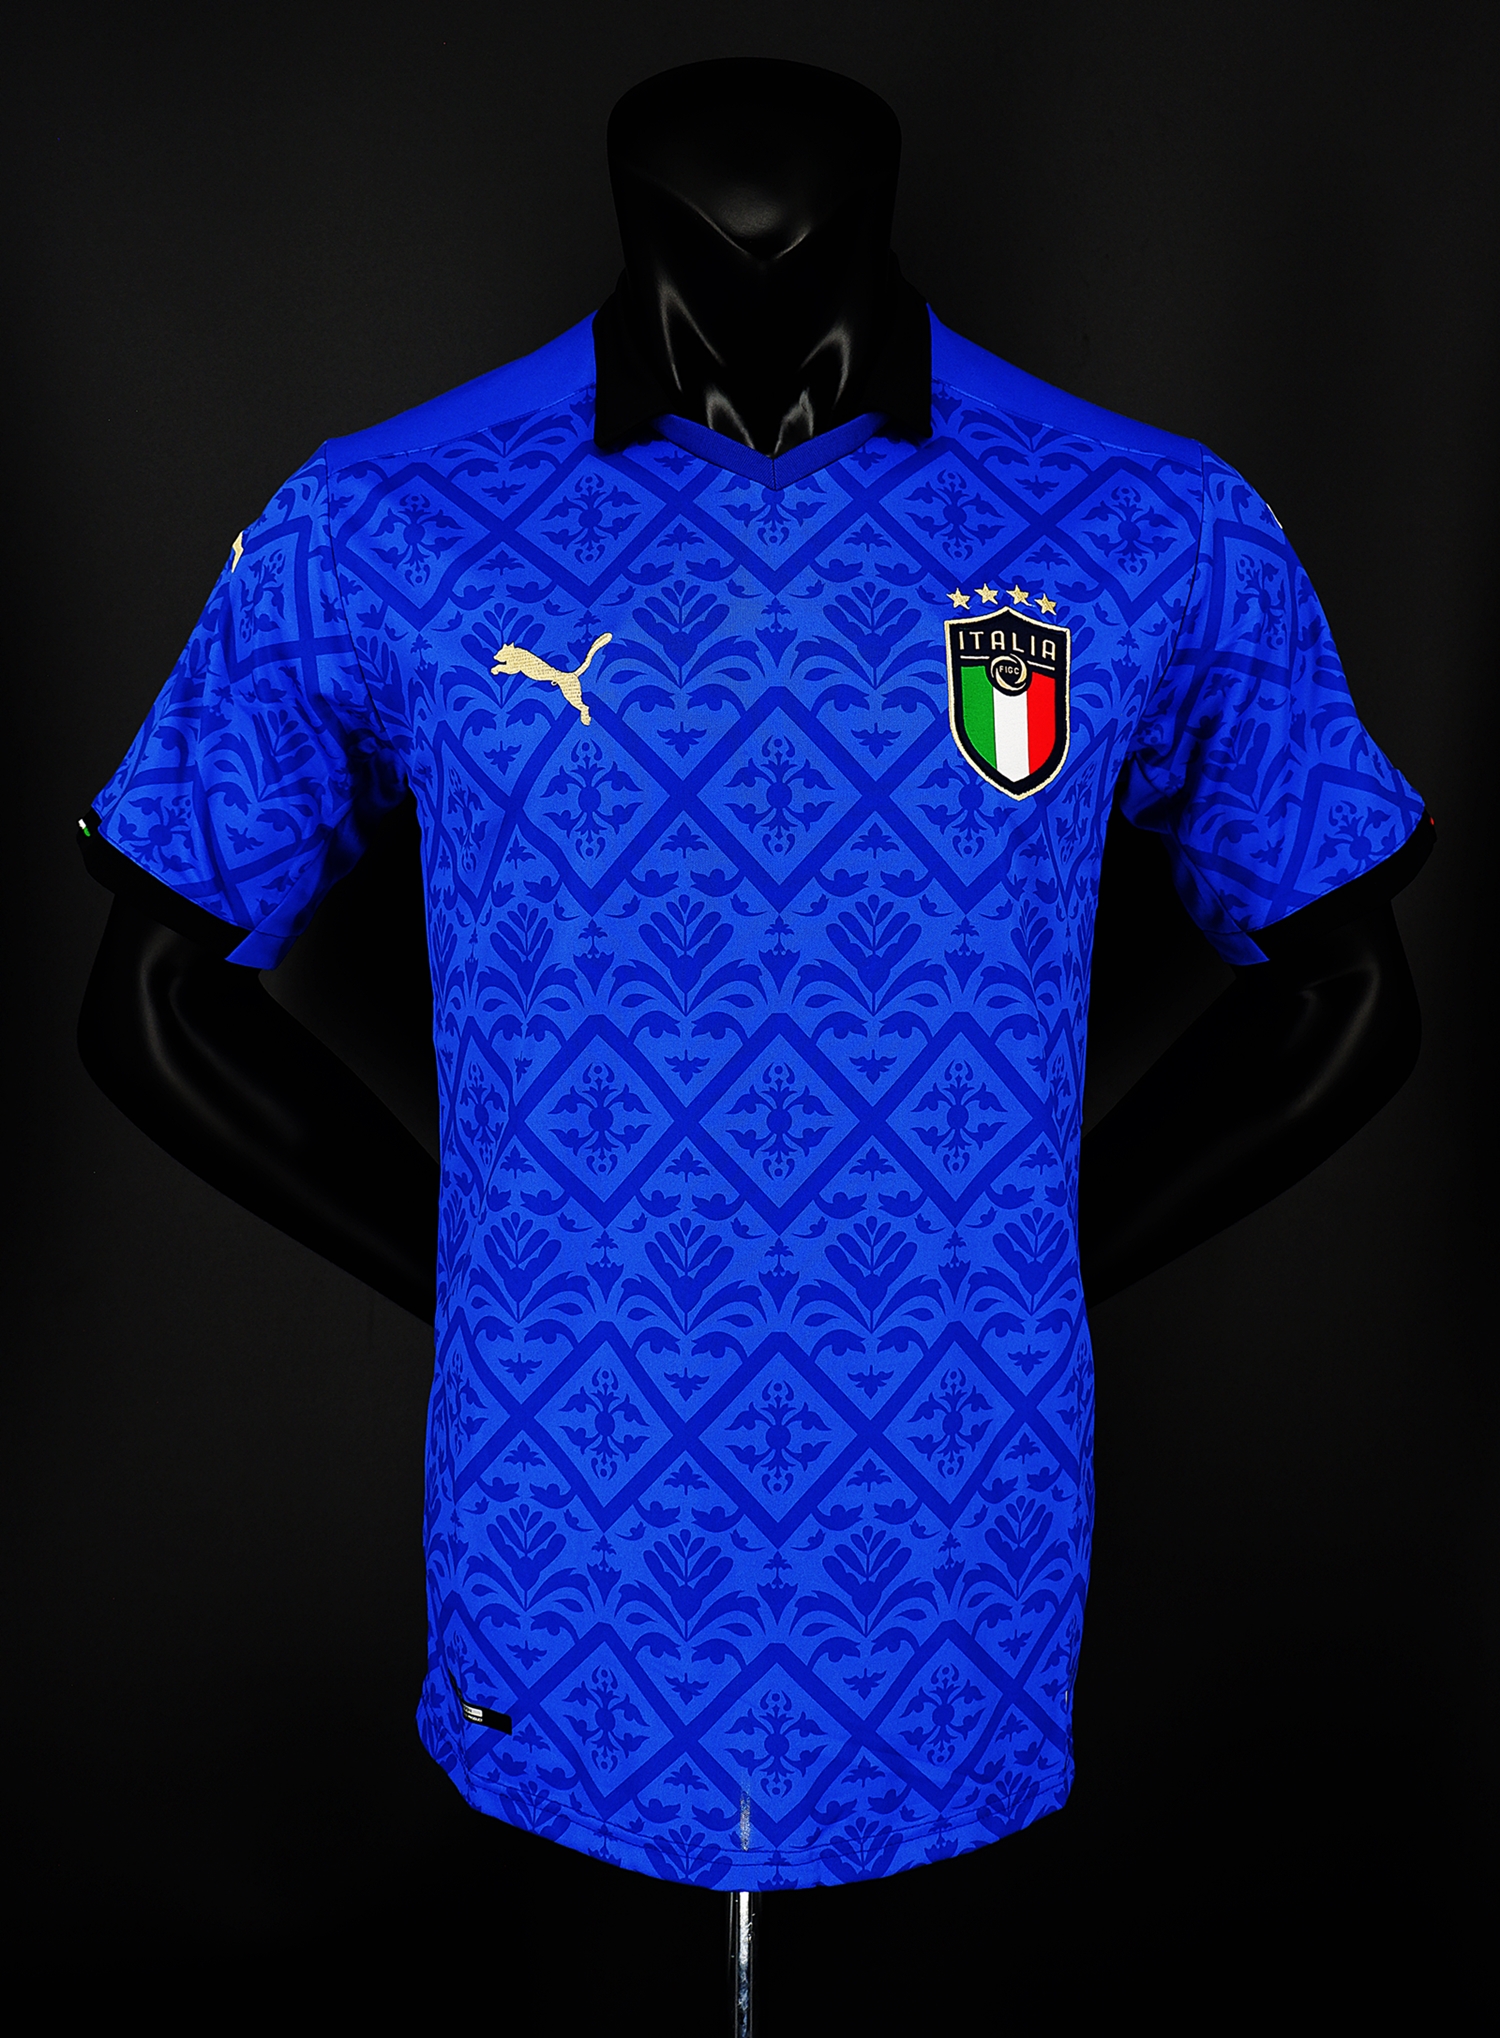 เสื้อฟุตบอลยูโร อิตาลีชุดเหย้า ปี2020/21 Official Italy Home 2020/21 ภาพถ่ายจากของจริง) Top Thai Quality football soccer jerseys shirts AAA